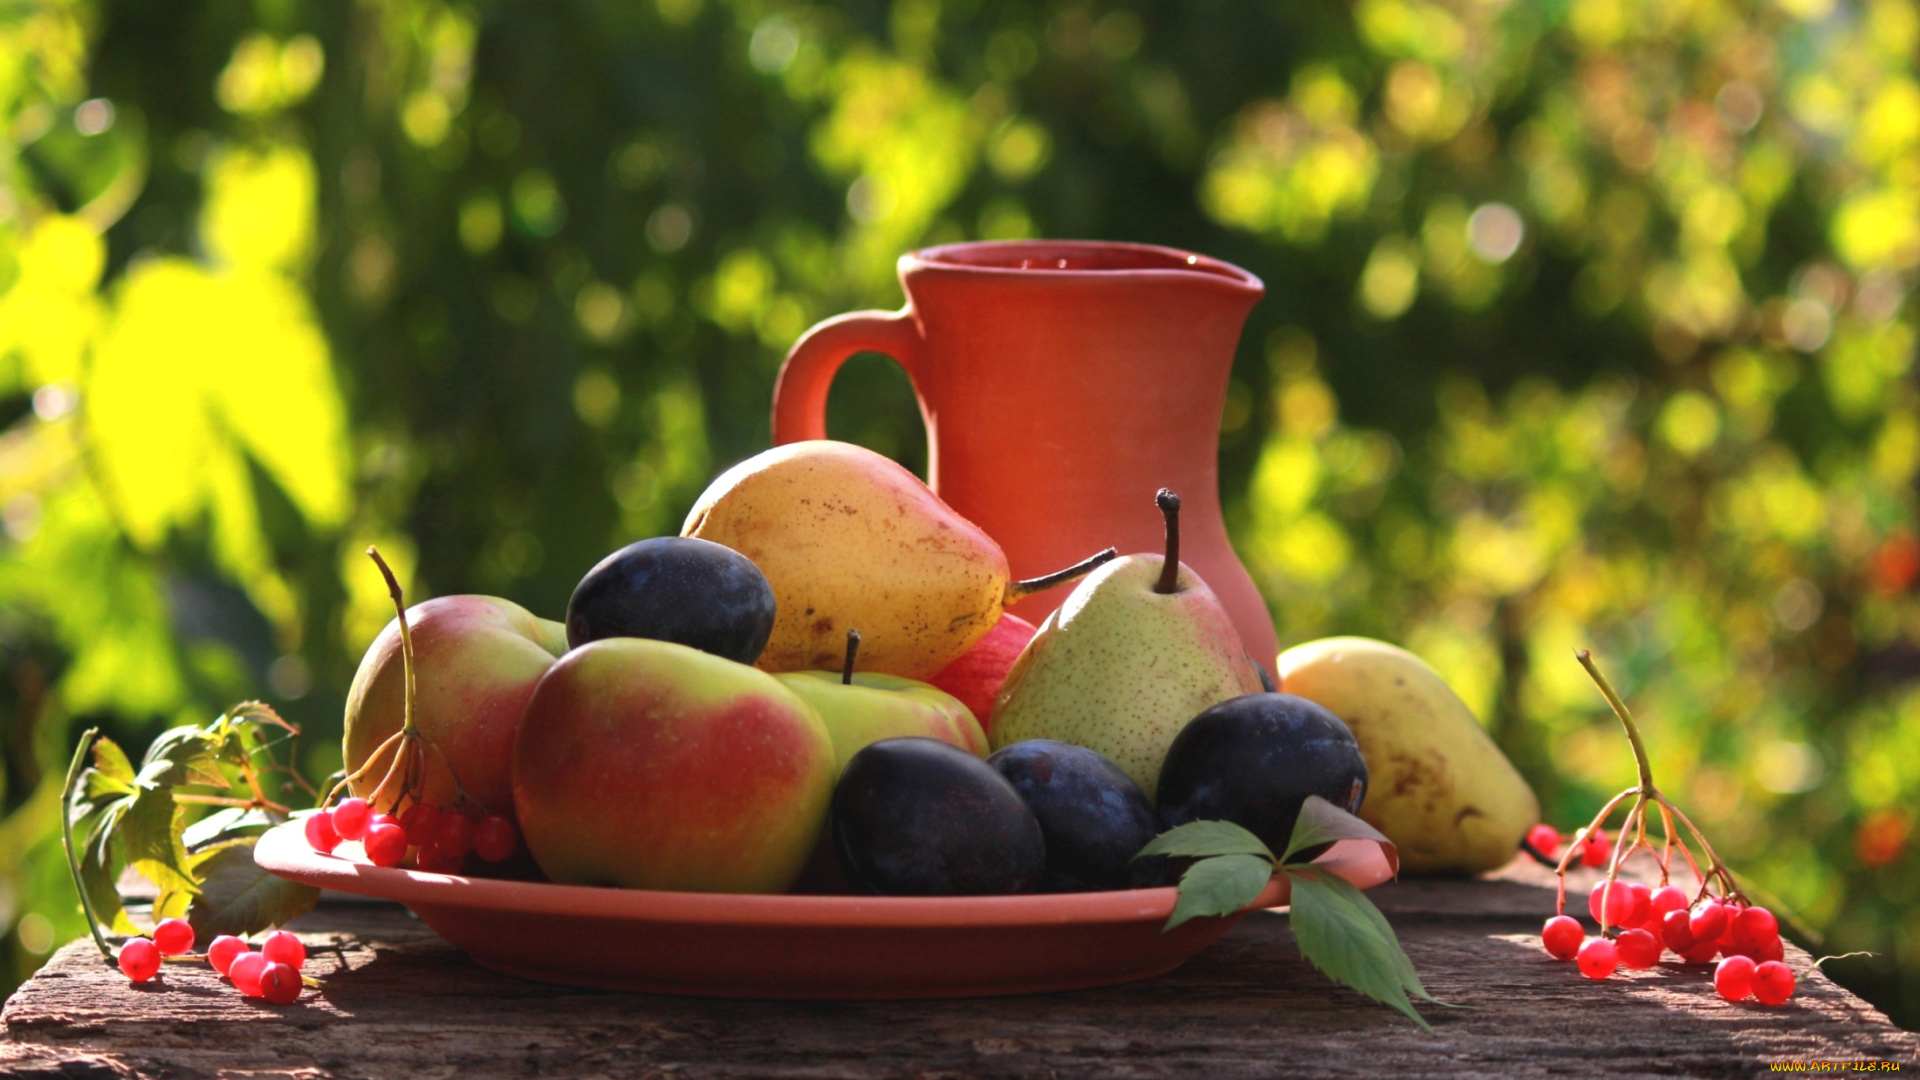 еда, фрукты, ягоды, груши, сливы, калина, кувшин, яблоки